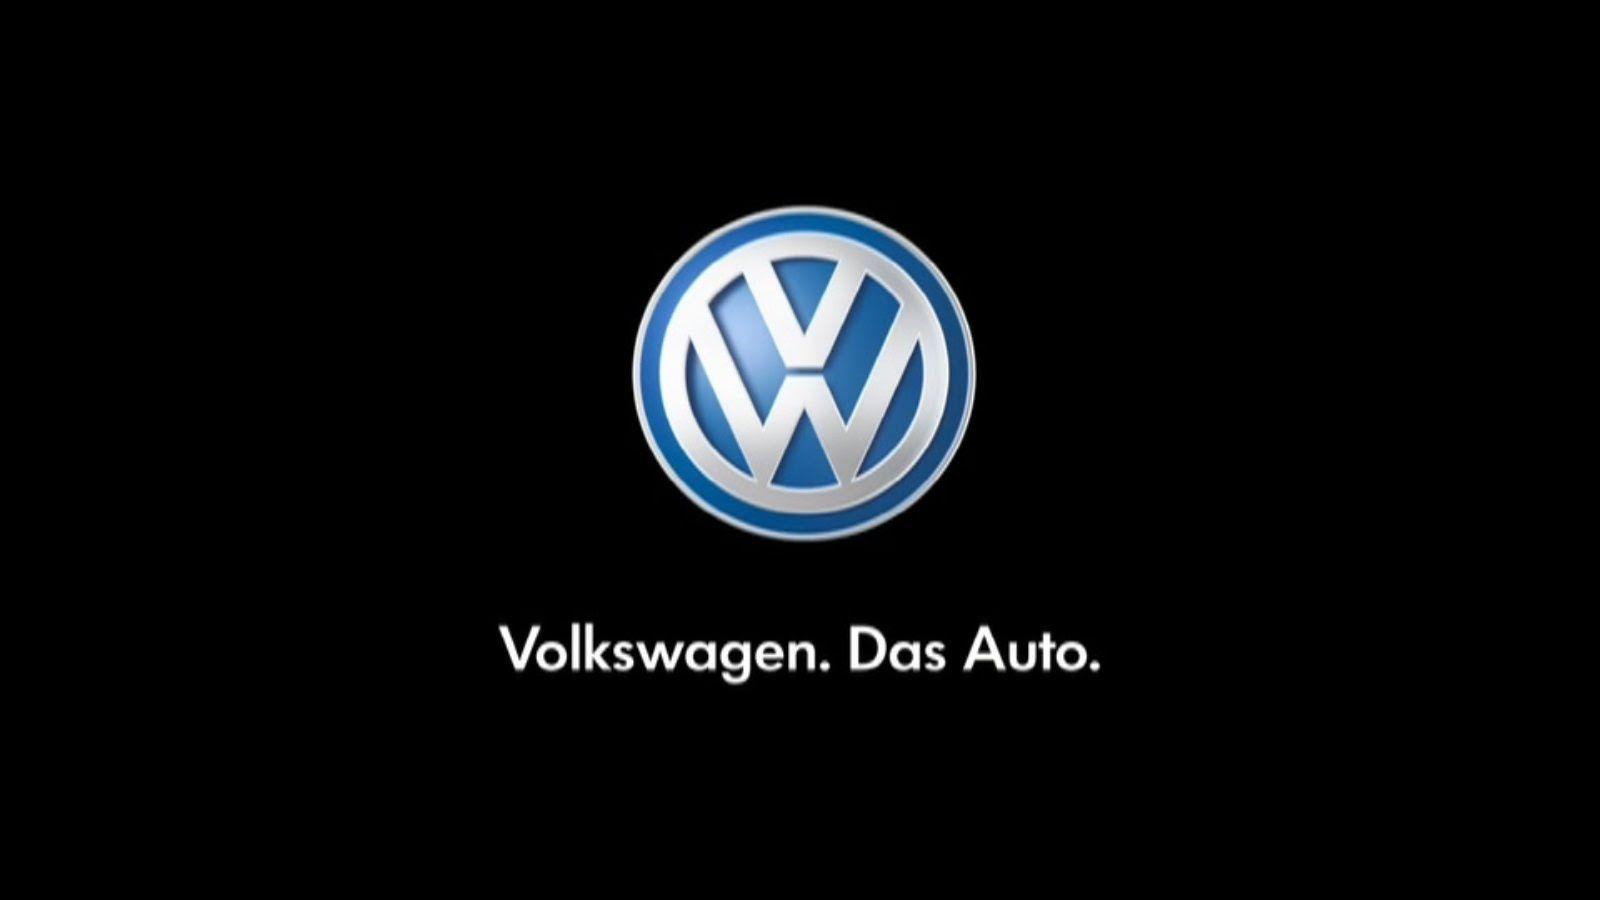 Volkswagen Word Logo - Looking ahead to Volkswagen Concept cars. - ResCars